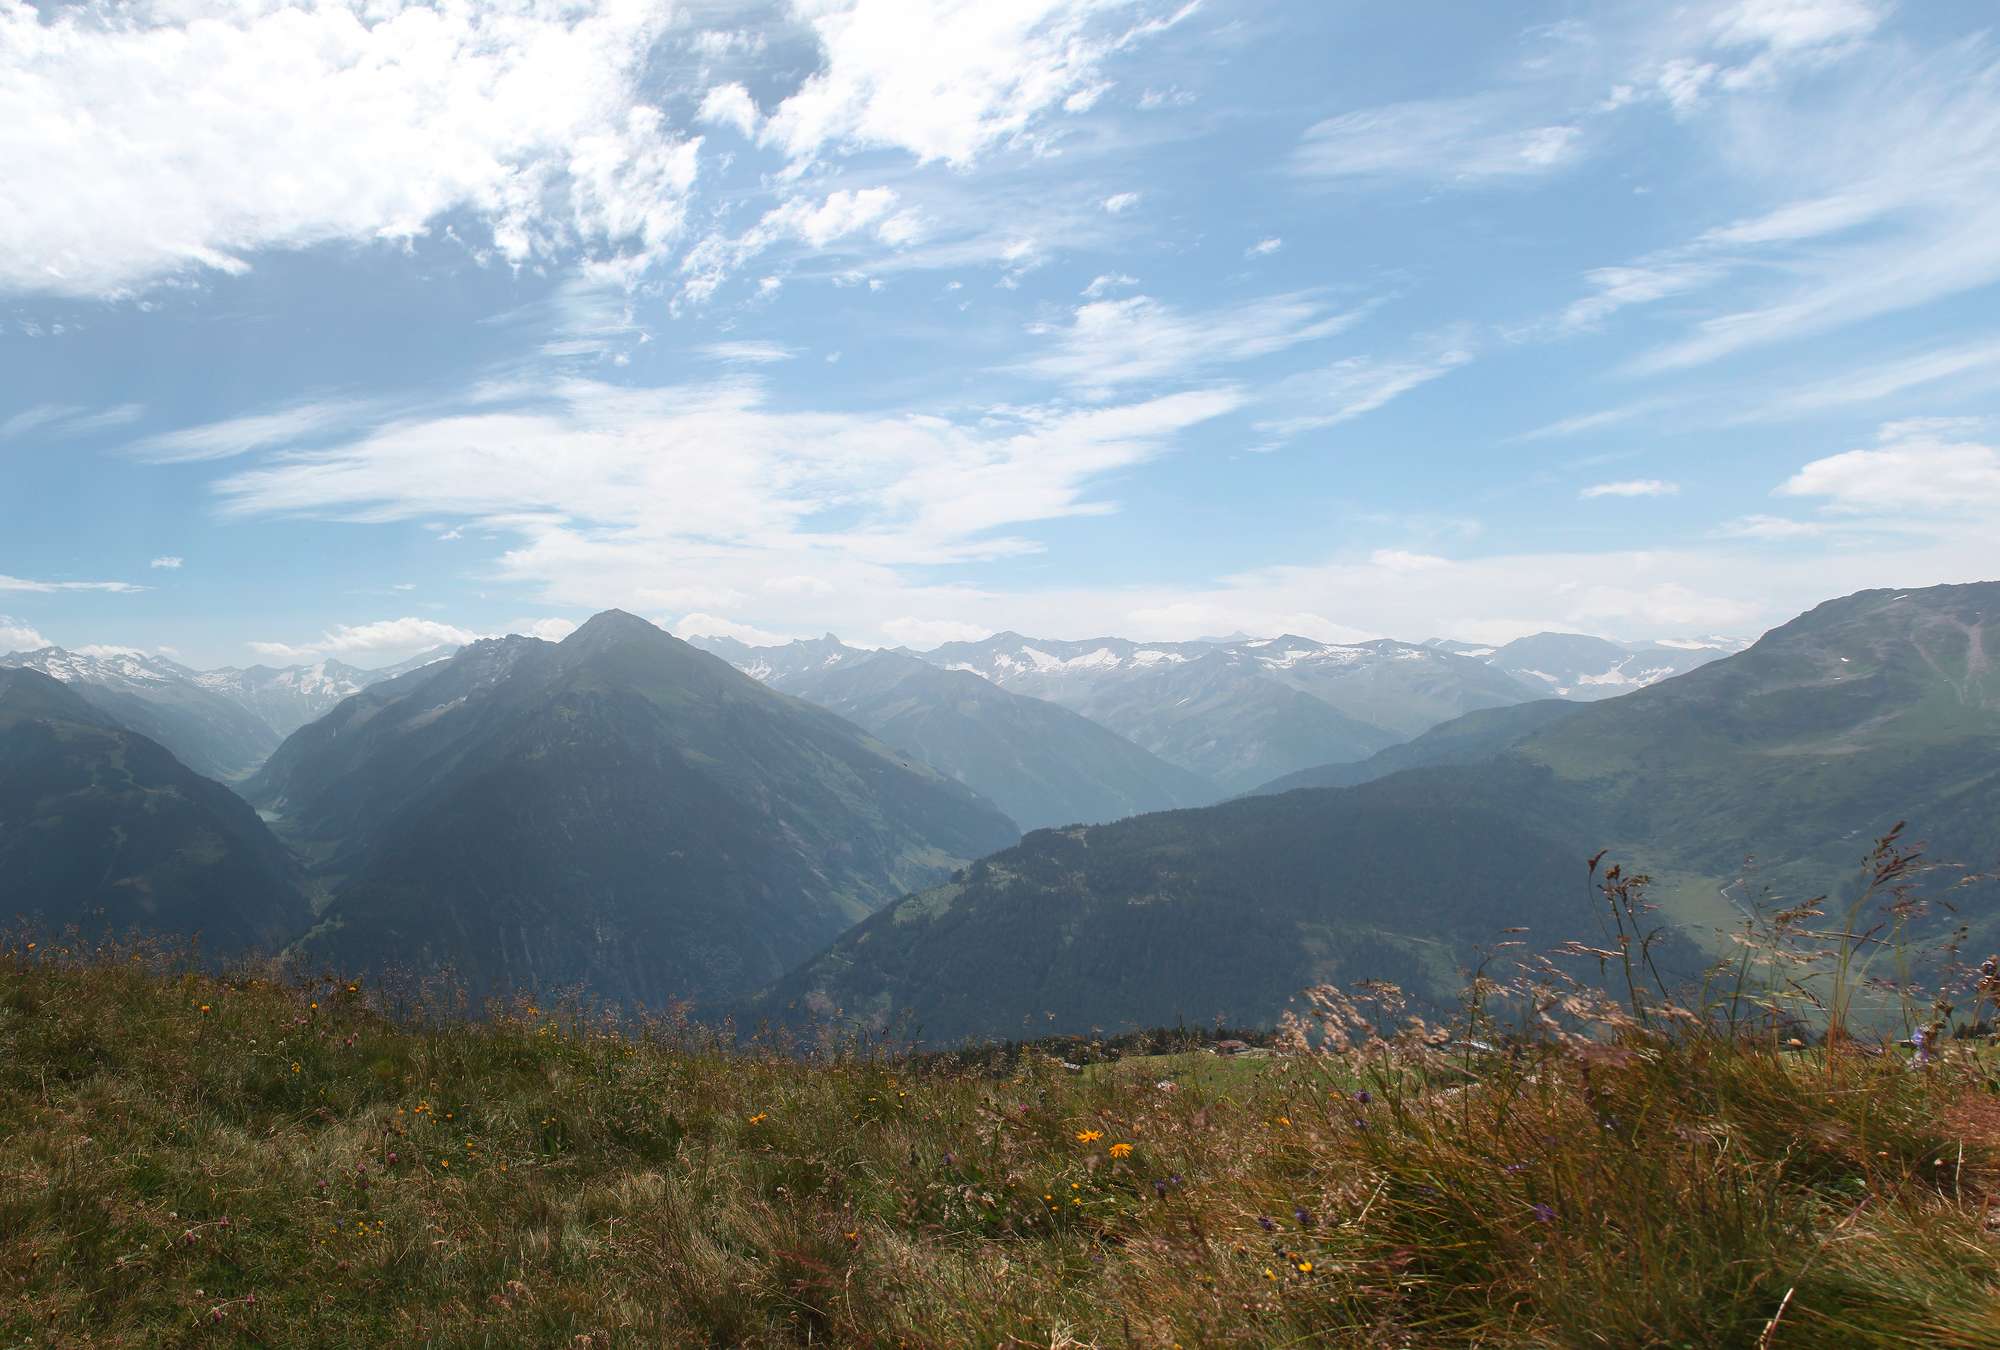             Papel Pintado Montañas y Valles - Vista alpina
        